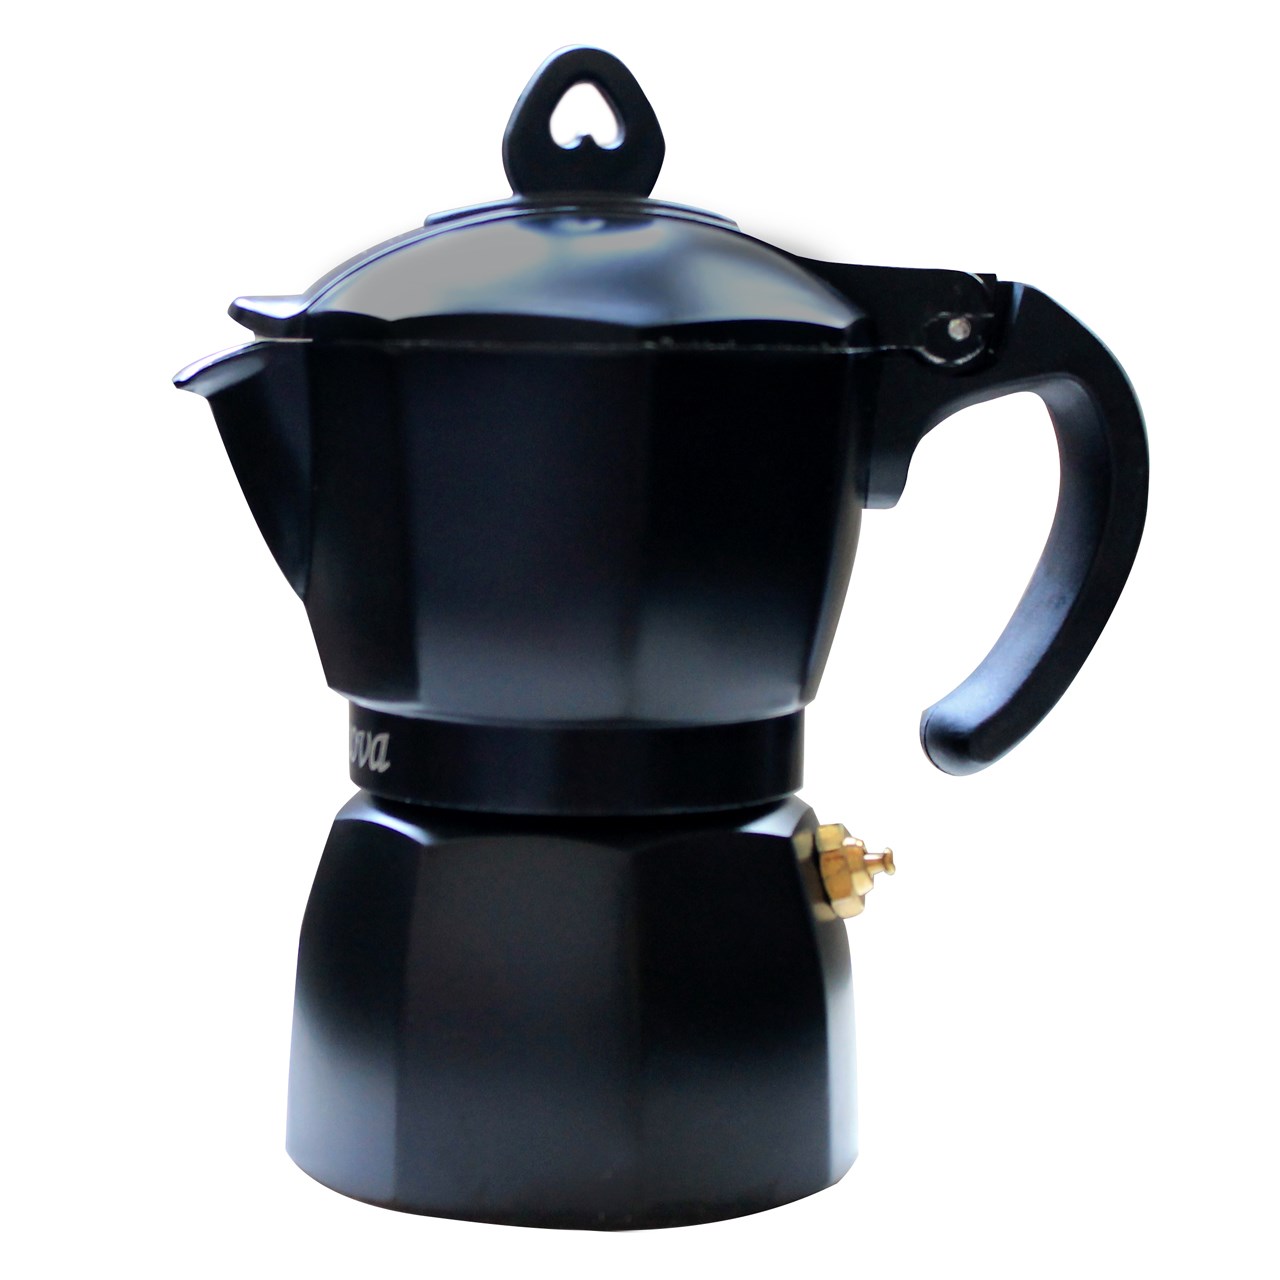 آنباکس قهوه ساز جنوا مدل AQ 2 Cups توسط نرگس برهان در تاریخ ۰۶ دی ۱۳۹۹